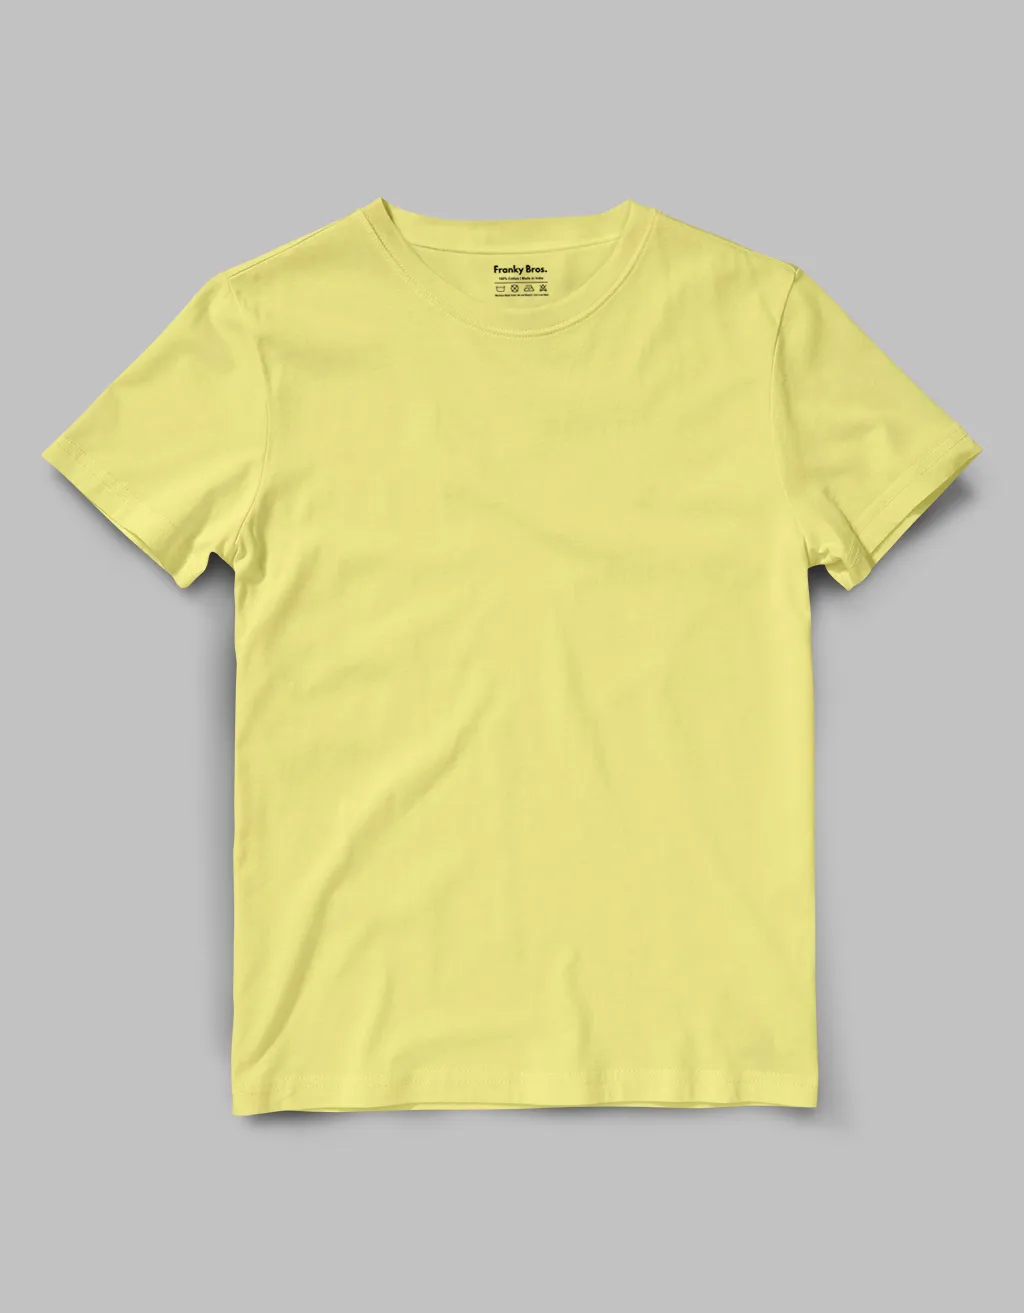 Plain light yellow t shirt for men